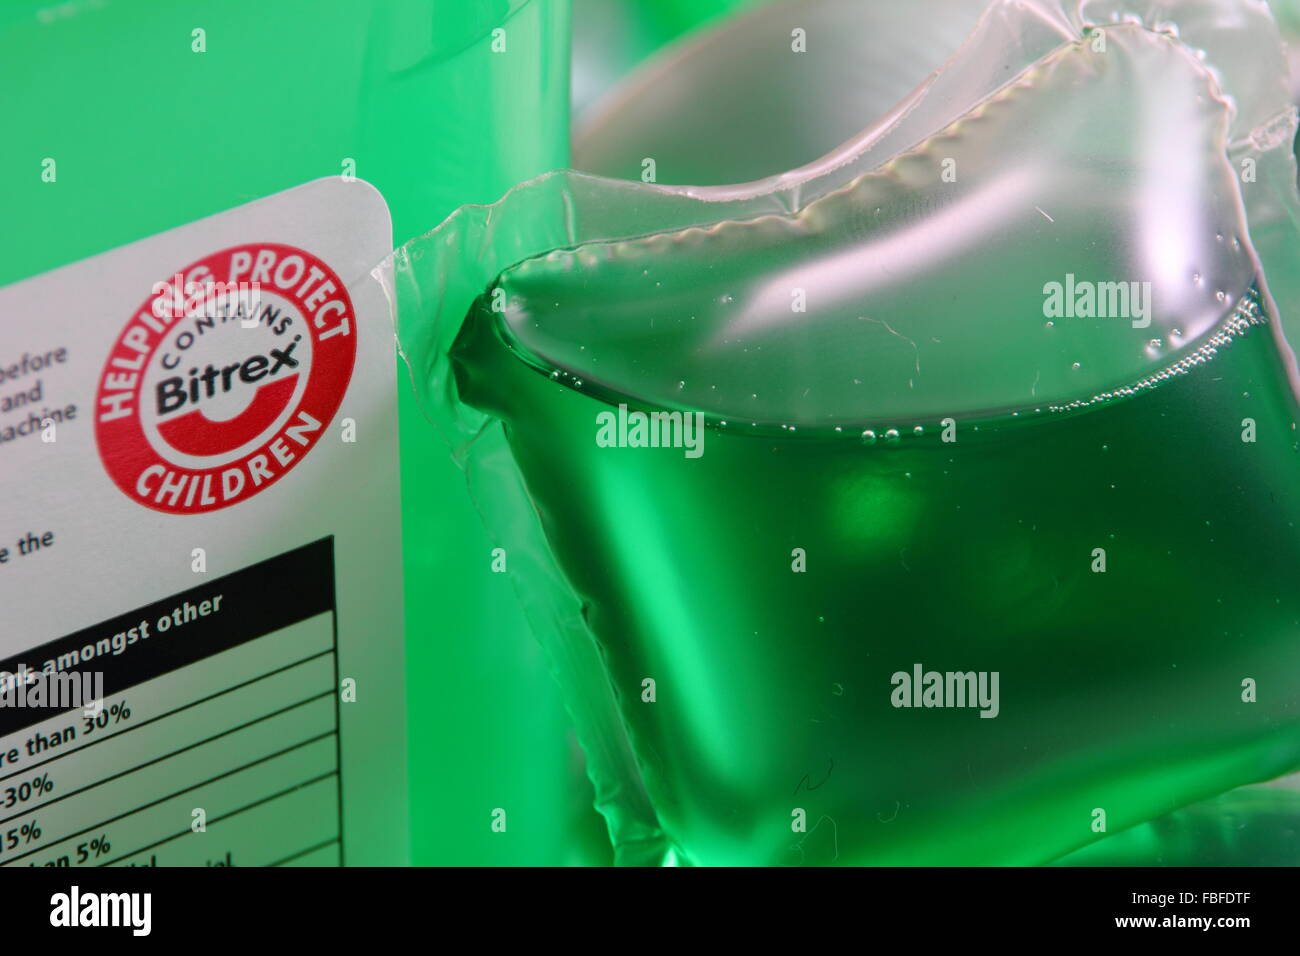 Ein Etikett auf der Verpackung des flüssigen Waschmittel "Kapseln"  Warnungen Benutzer, dass das Produkt Bitrex, UK enthält Stockfotografie -  Alamy